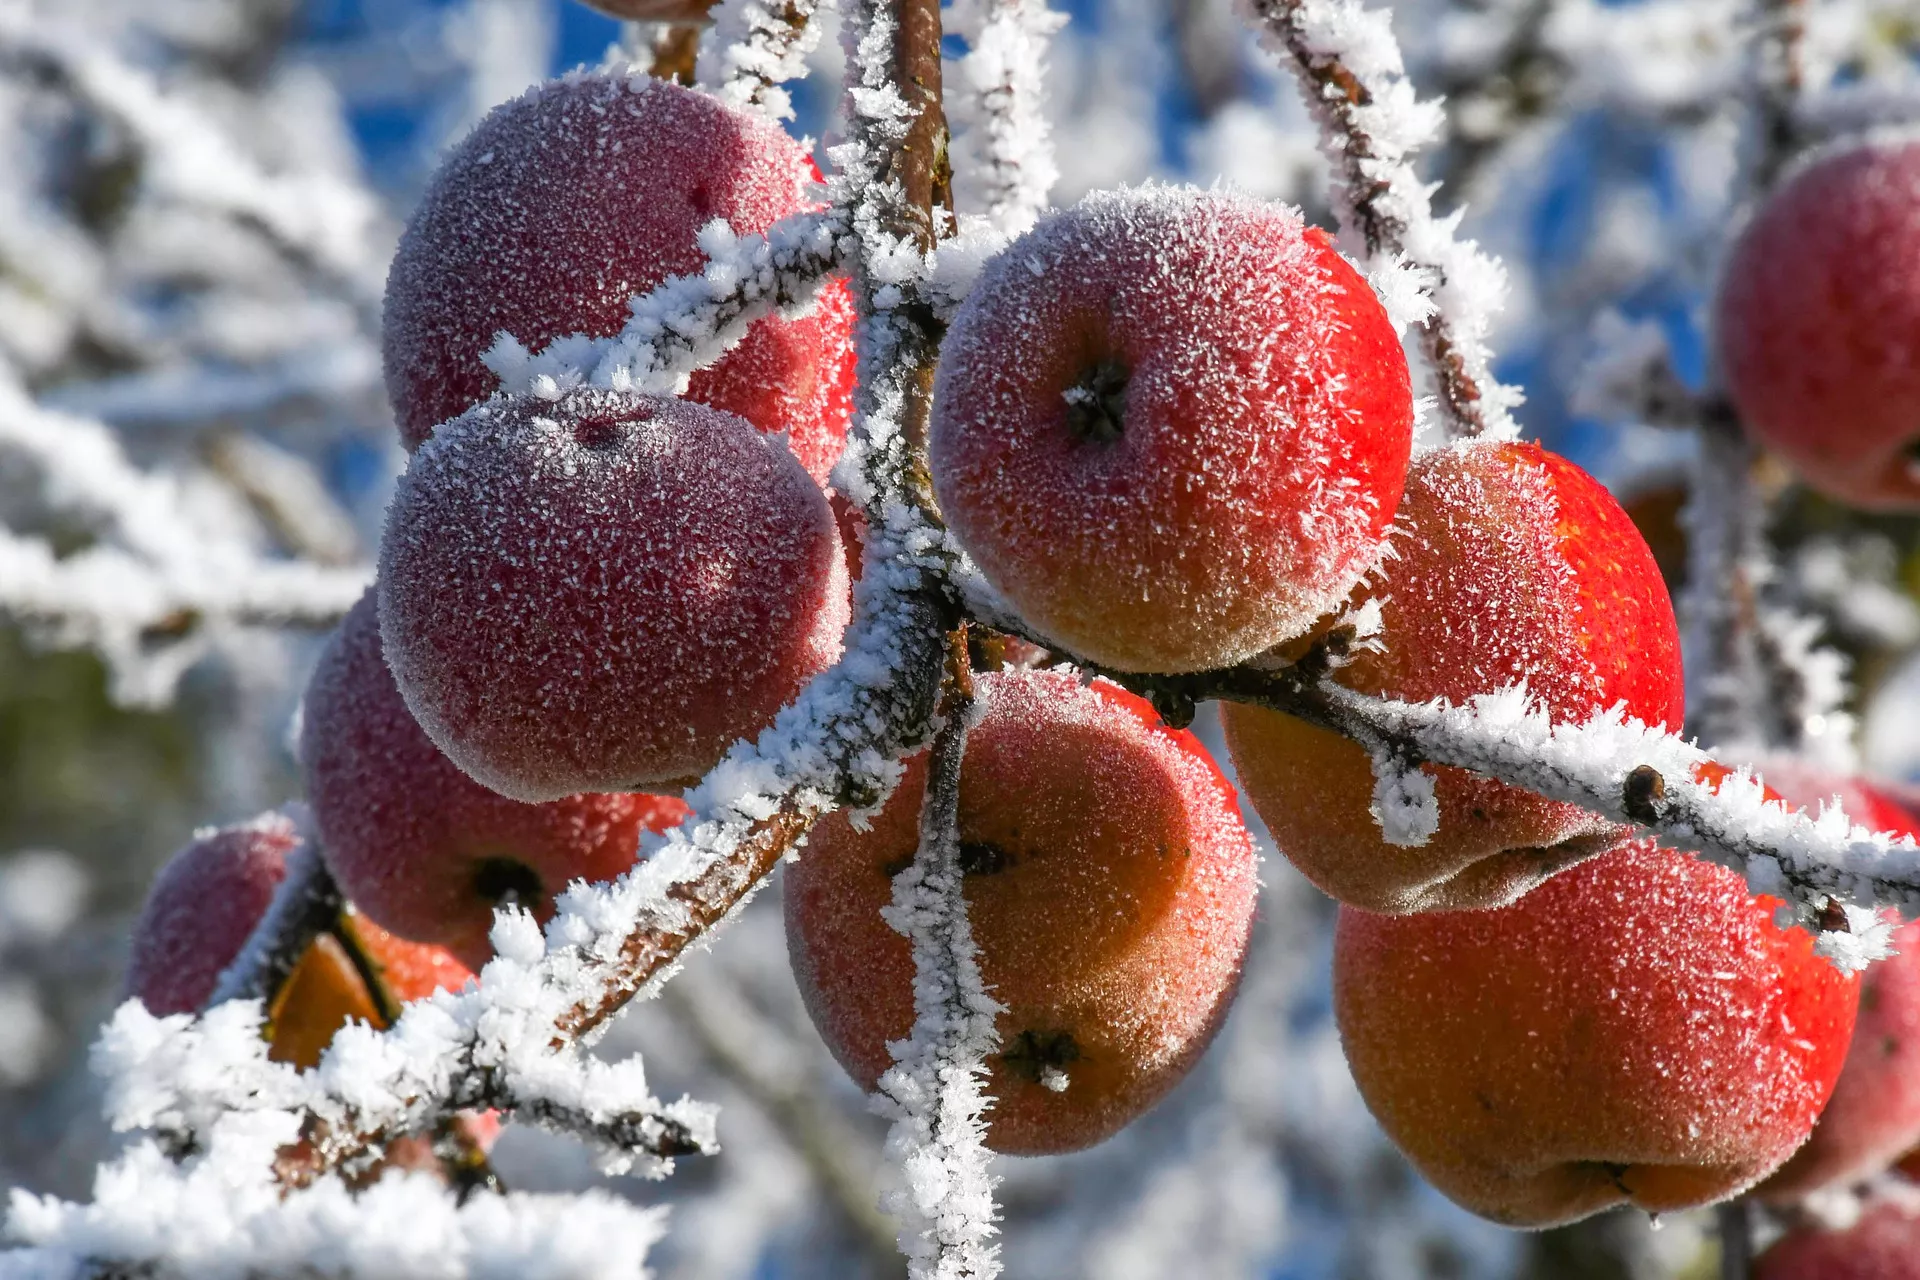  Как спасти плоды от заморозков / Фото: pixabay